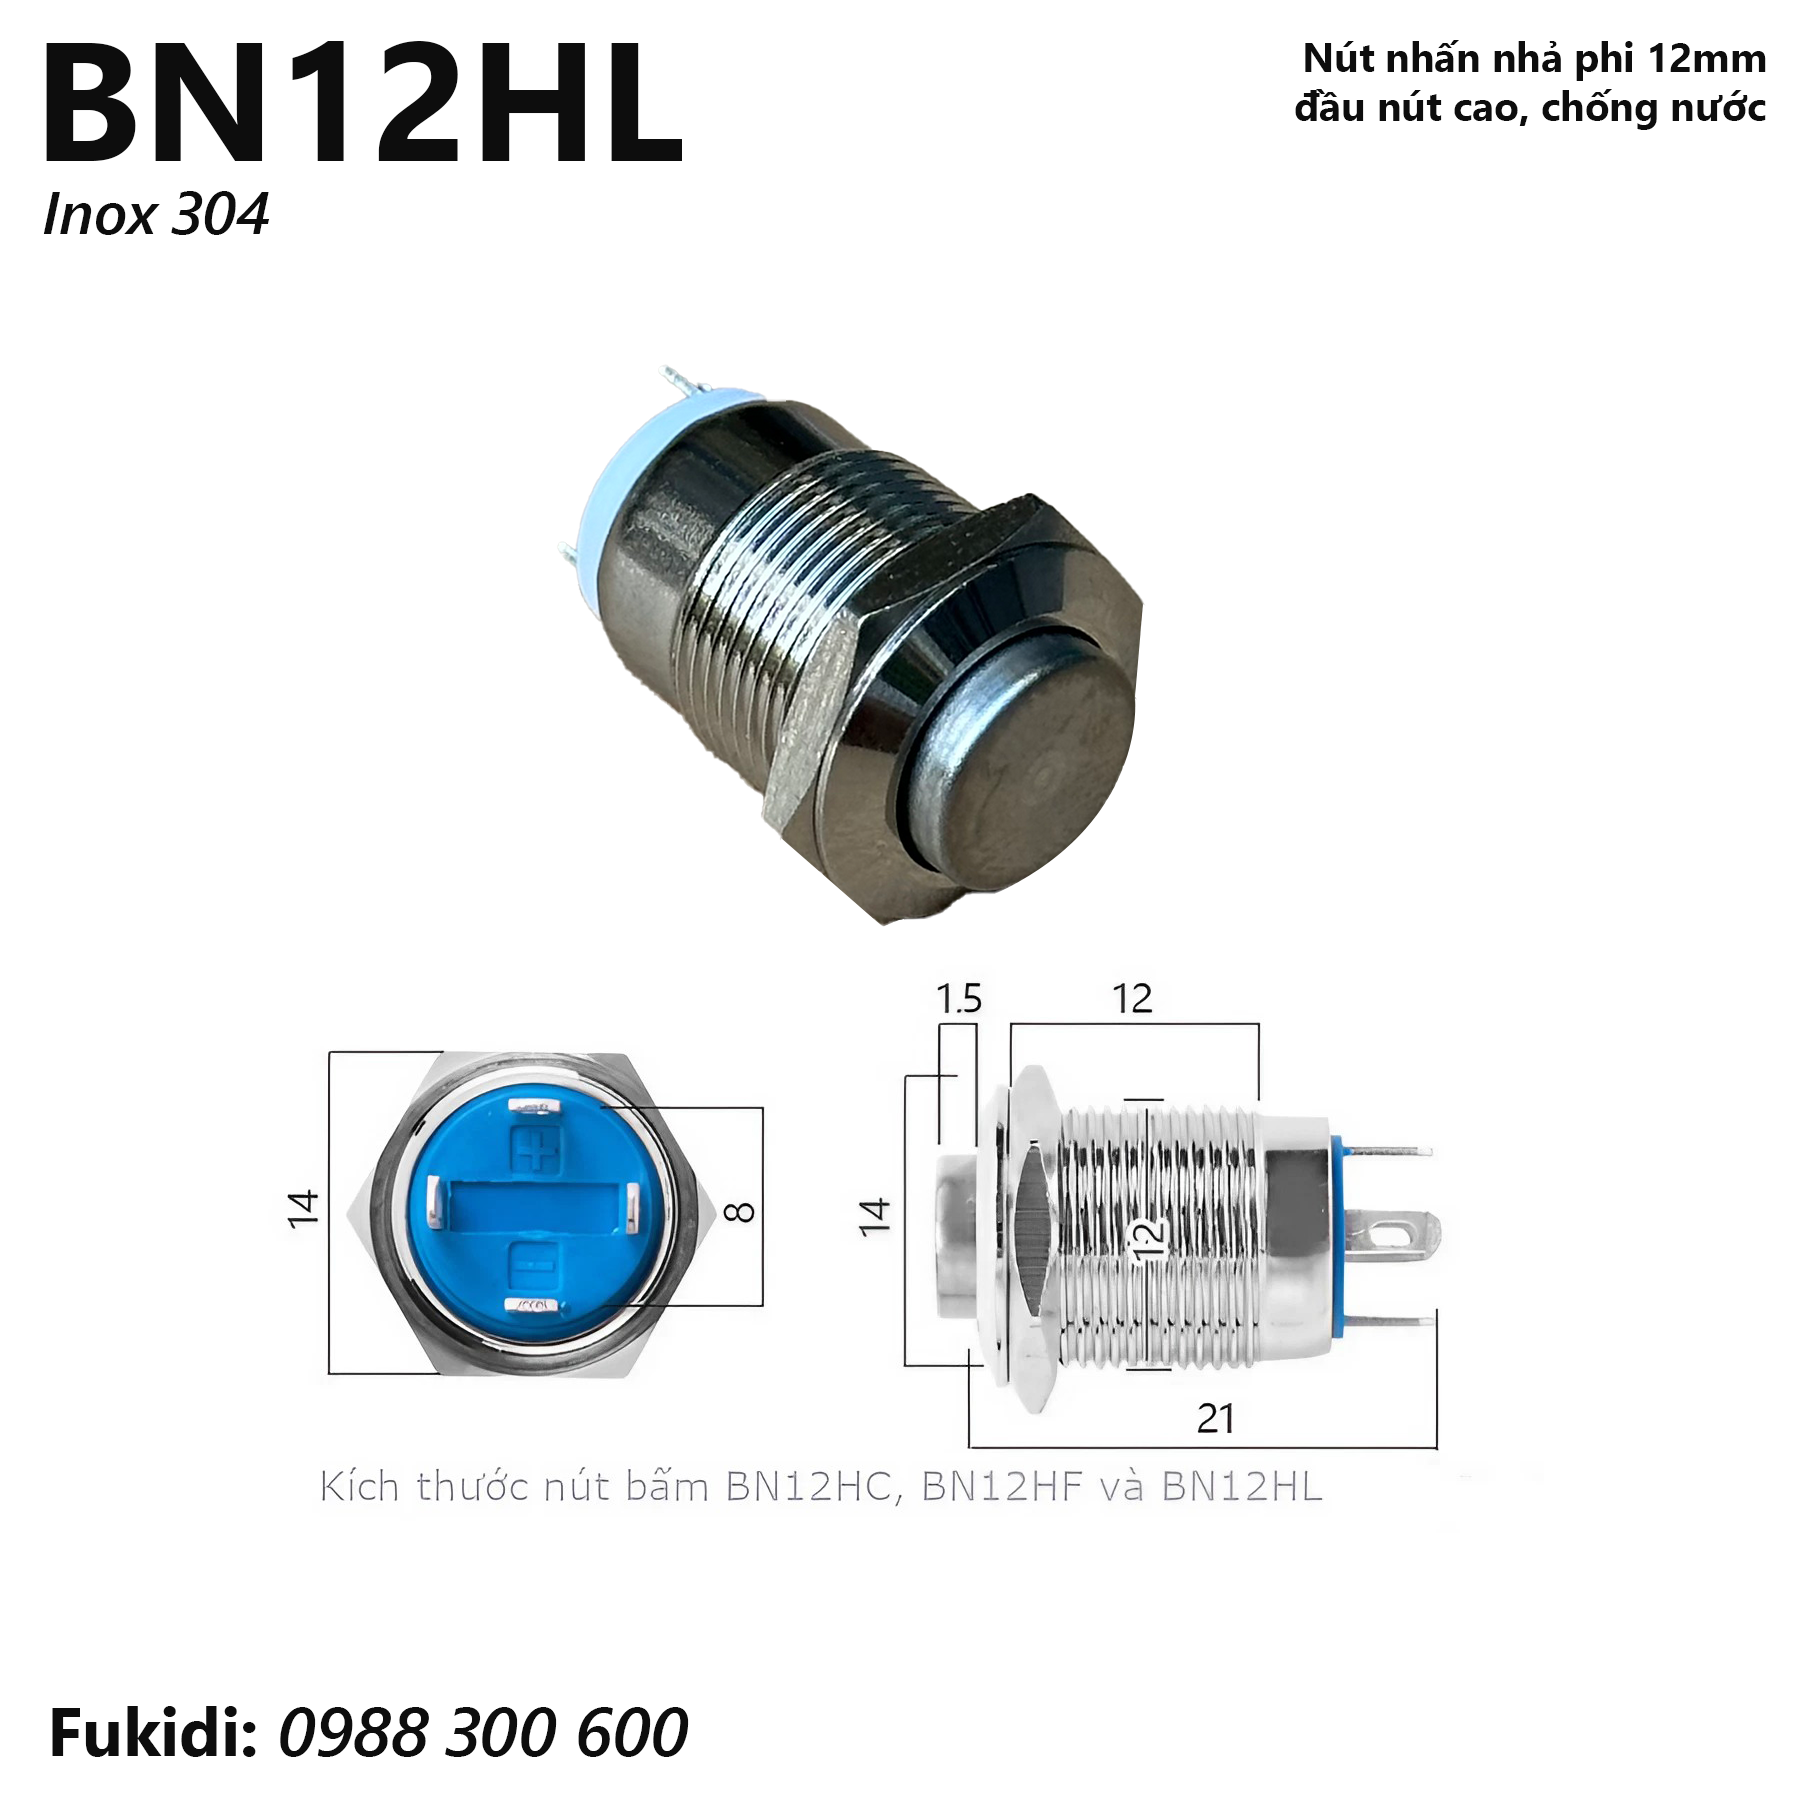 Nút nhấn nhả inox 304 phi 12mm, đầu nút cao, chống thấm nước - BN12HL